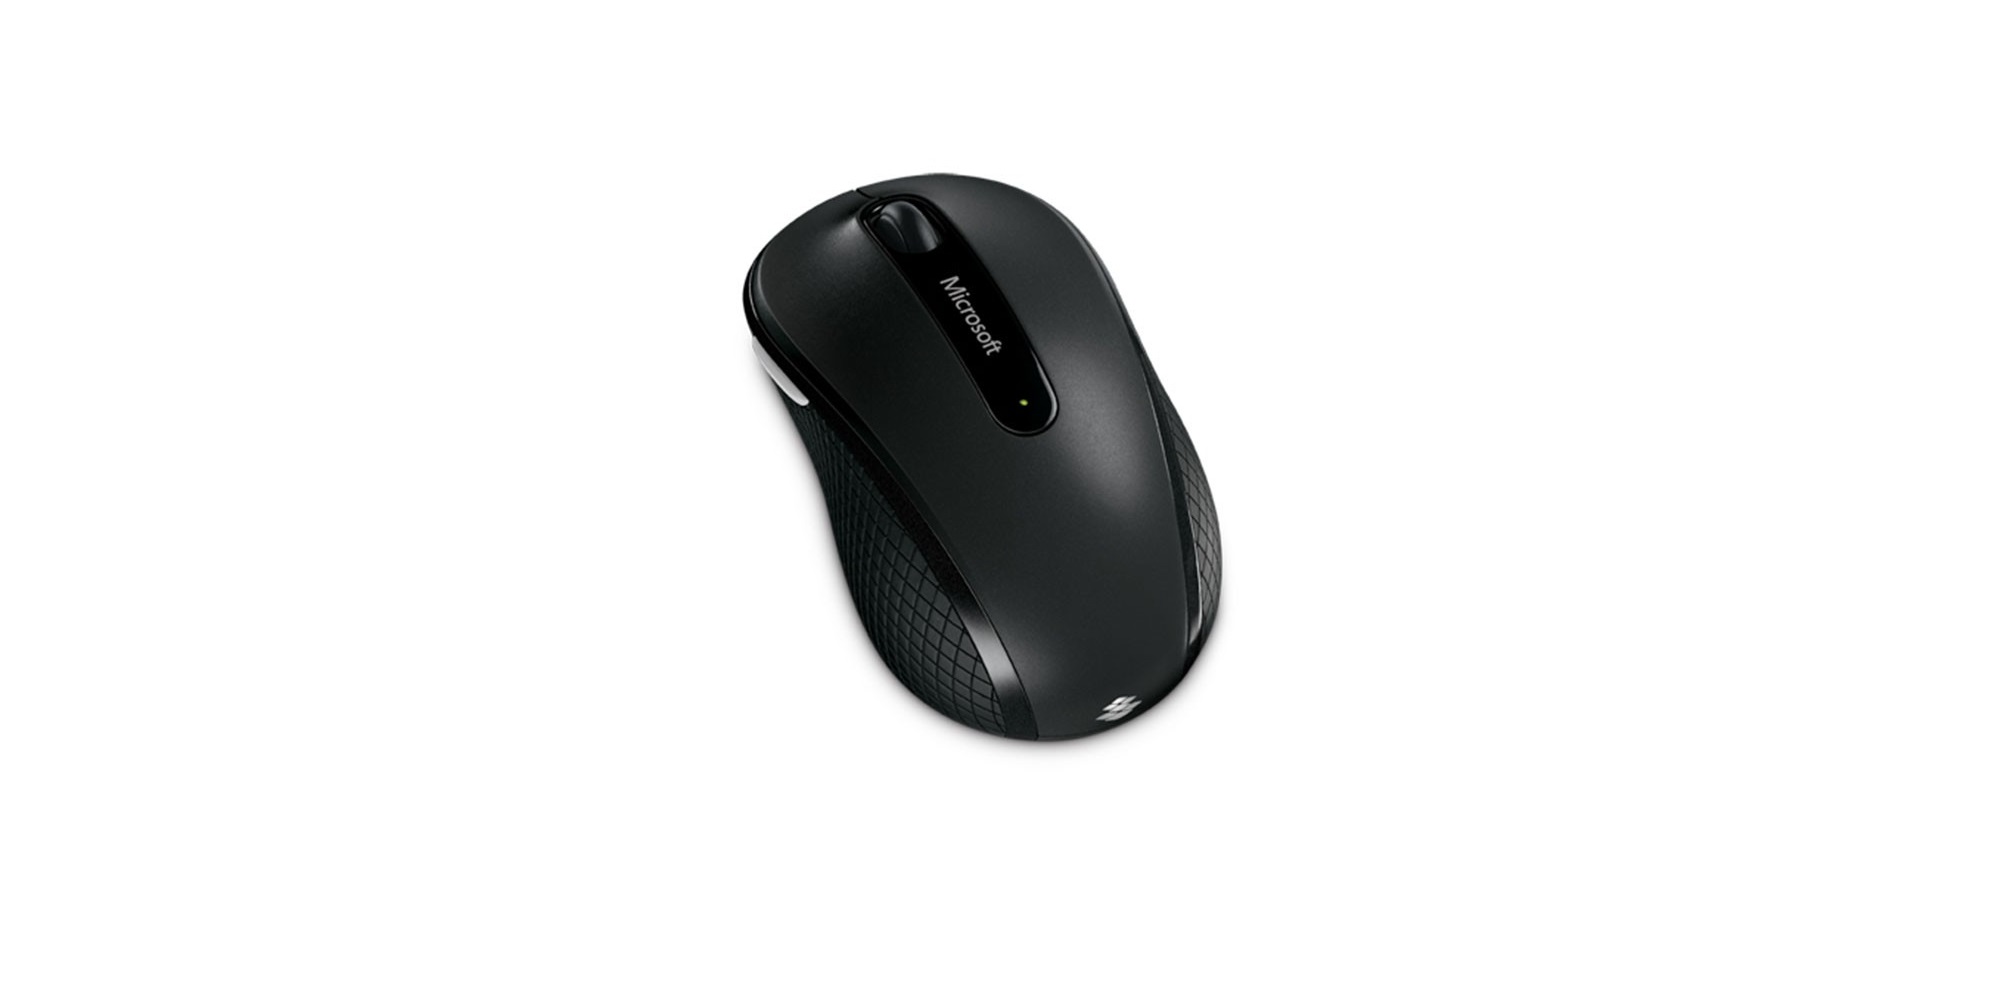 Chuột không dây Microsoft Wireless Mouse 4000 BlueTrack - D5D-00007 có tính năng flip 3D